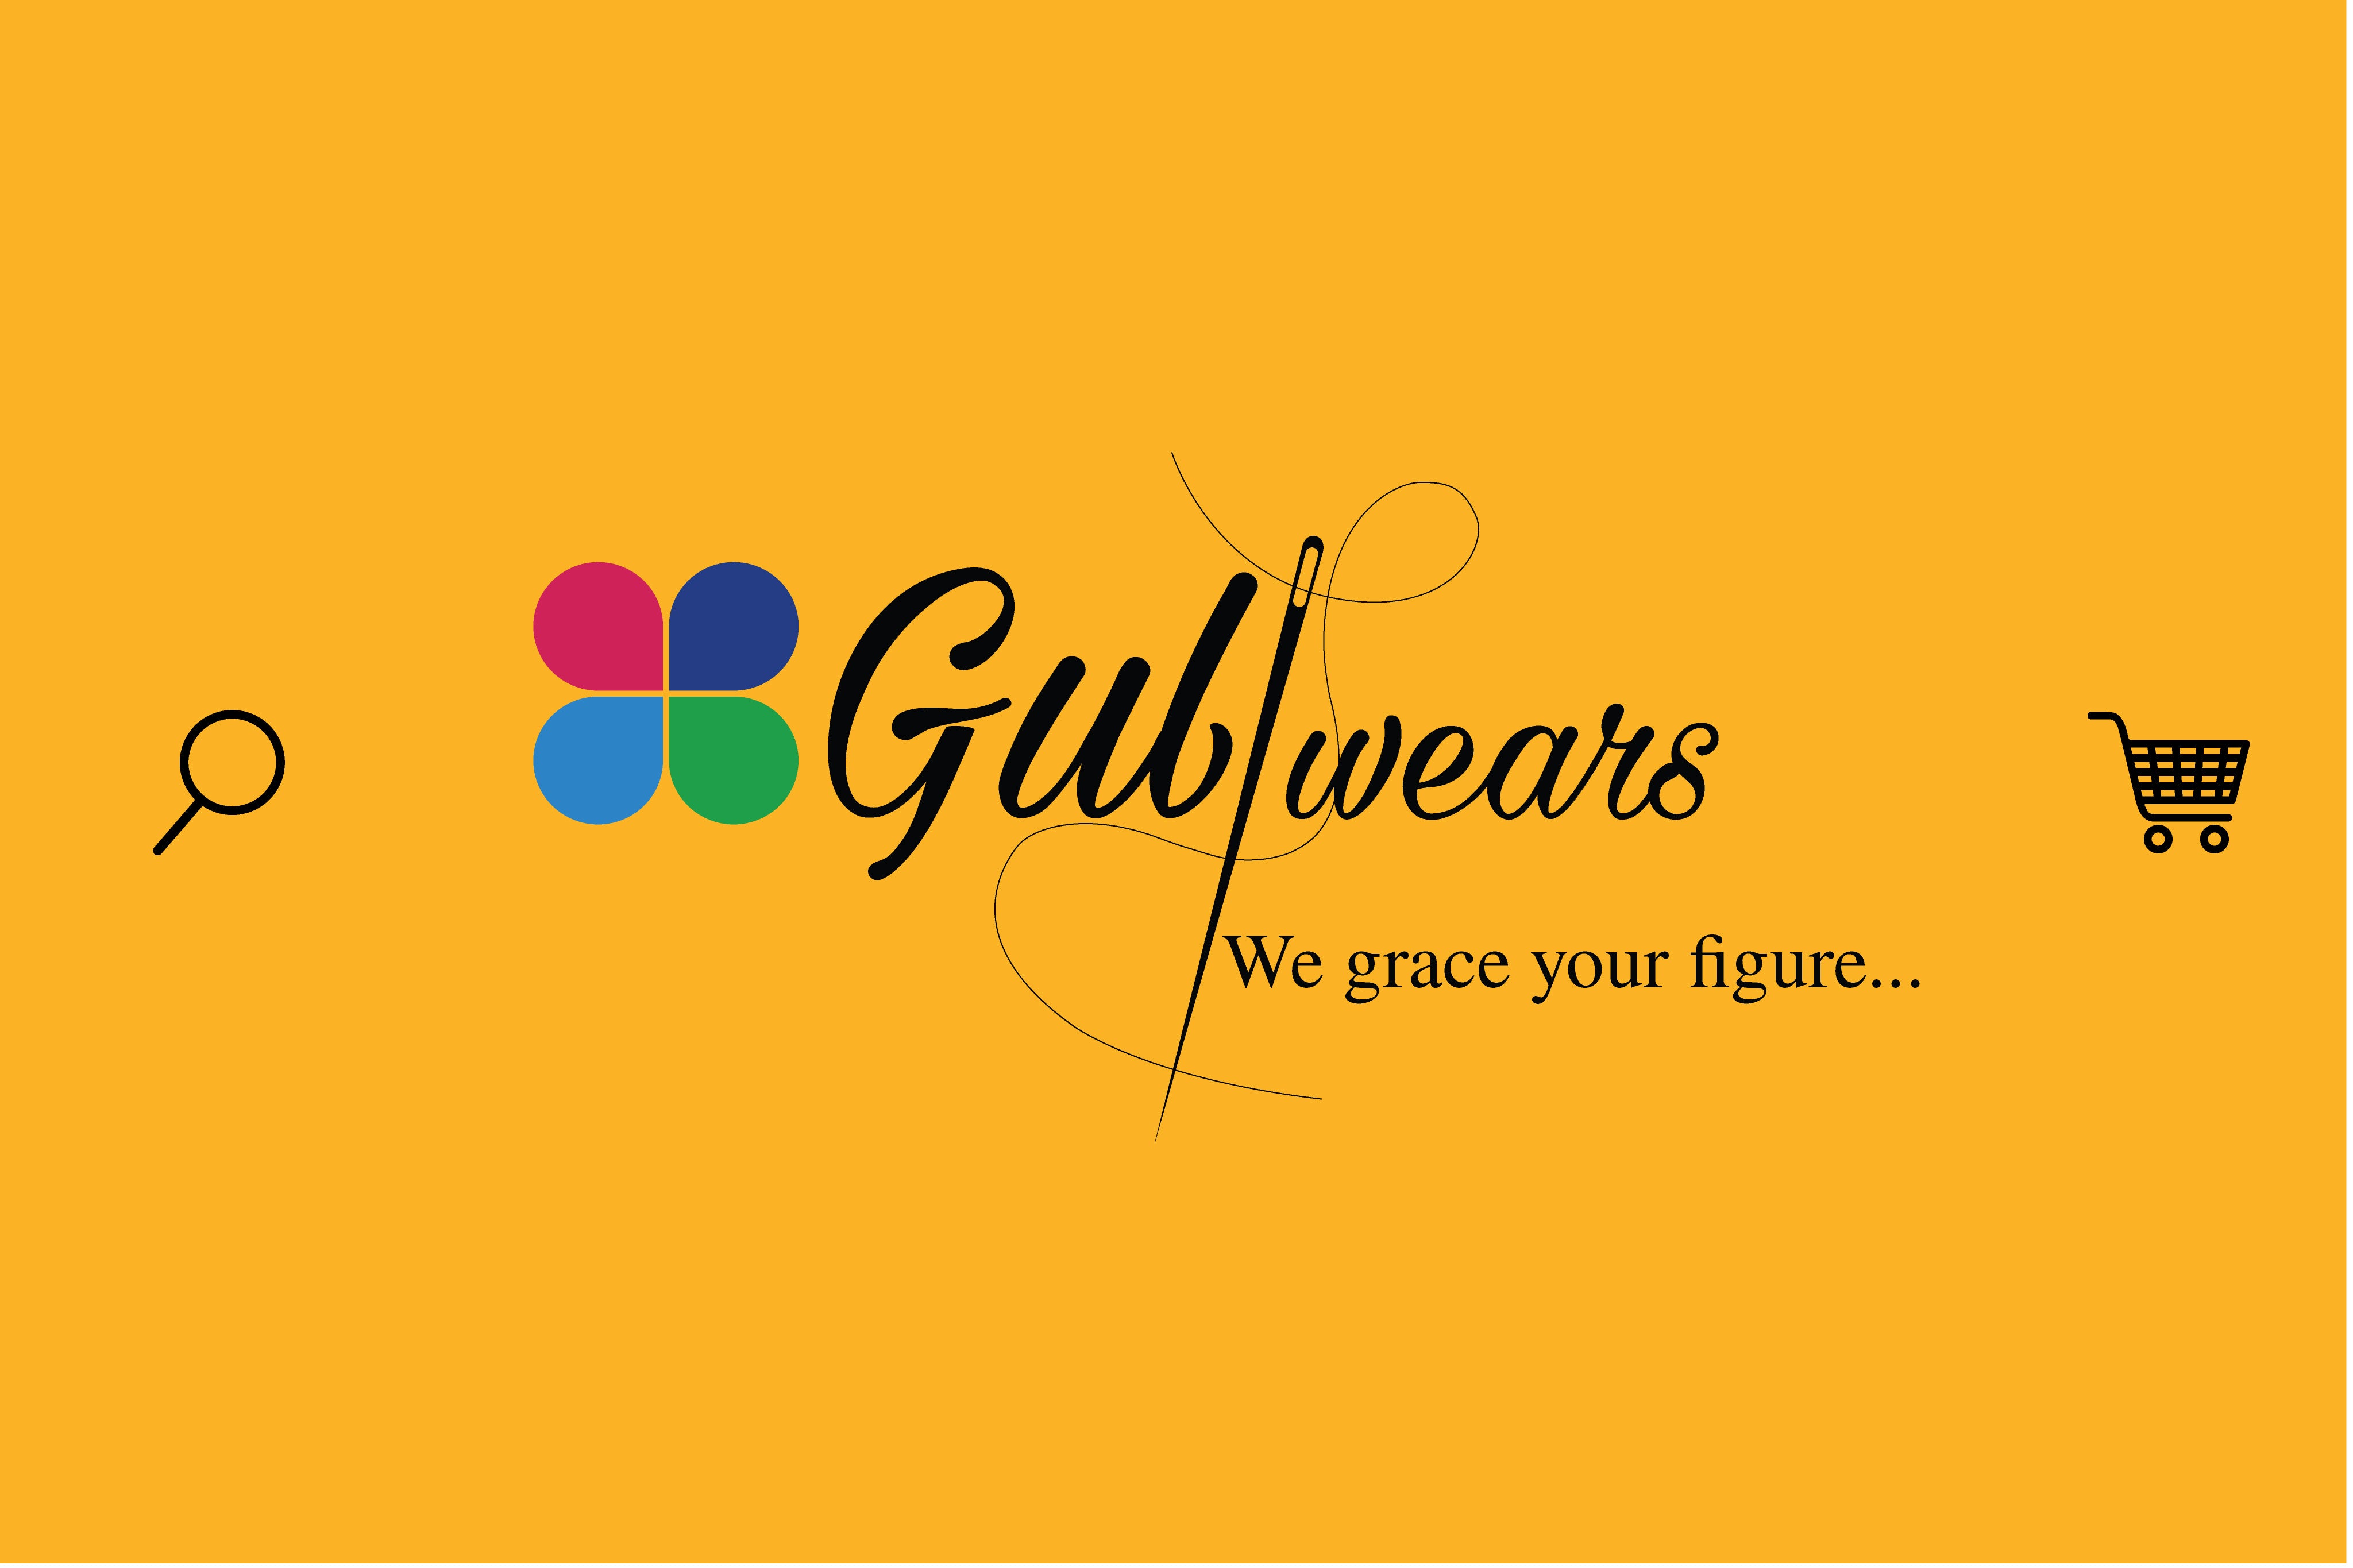 Gulwears.pk